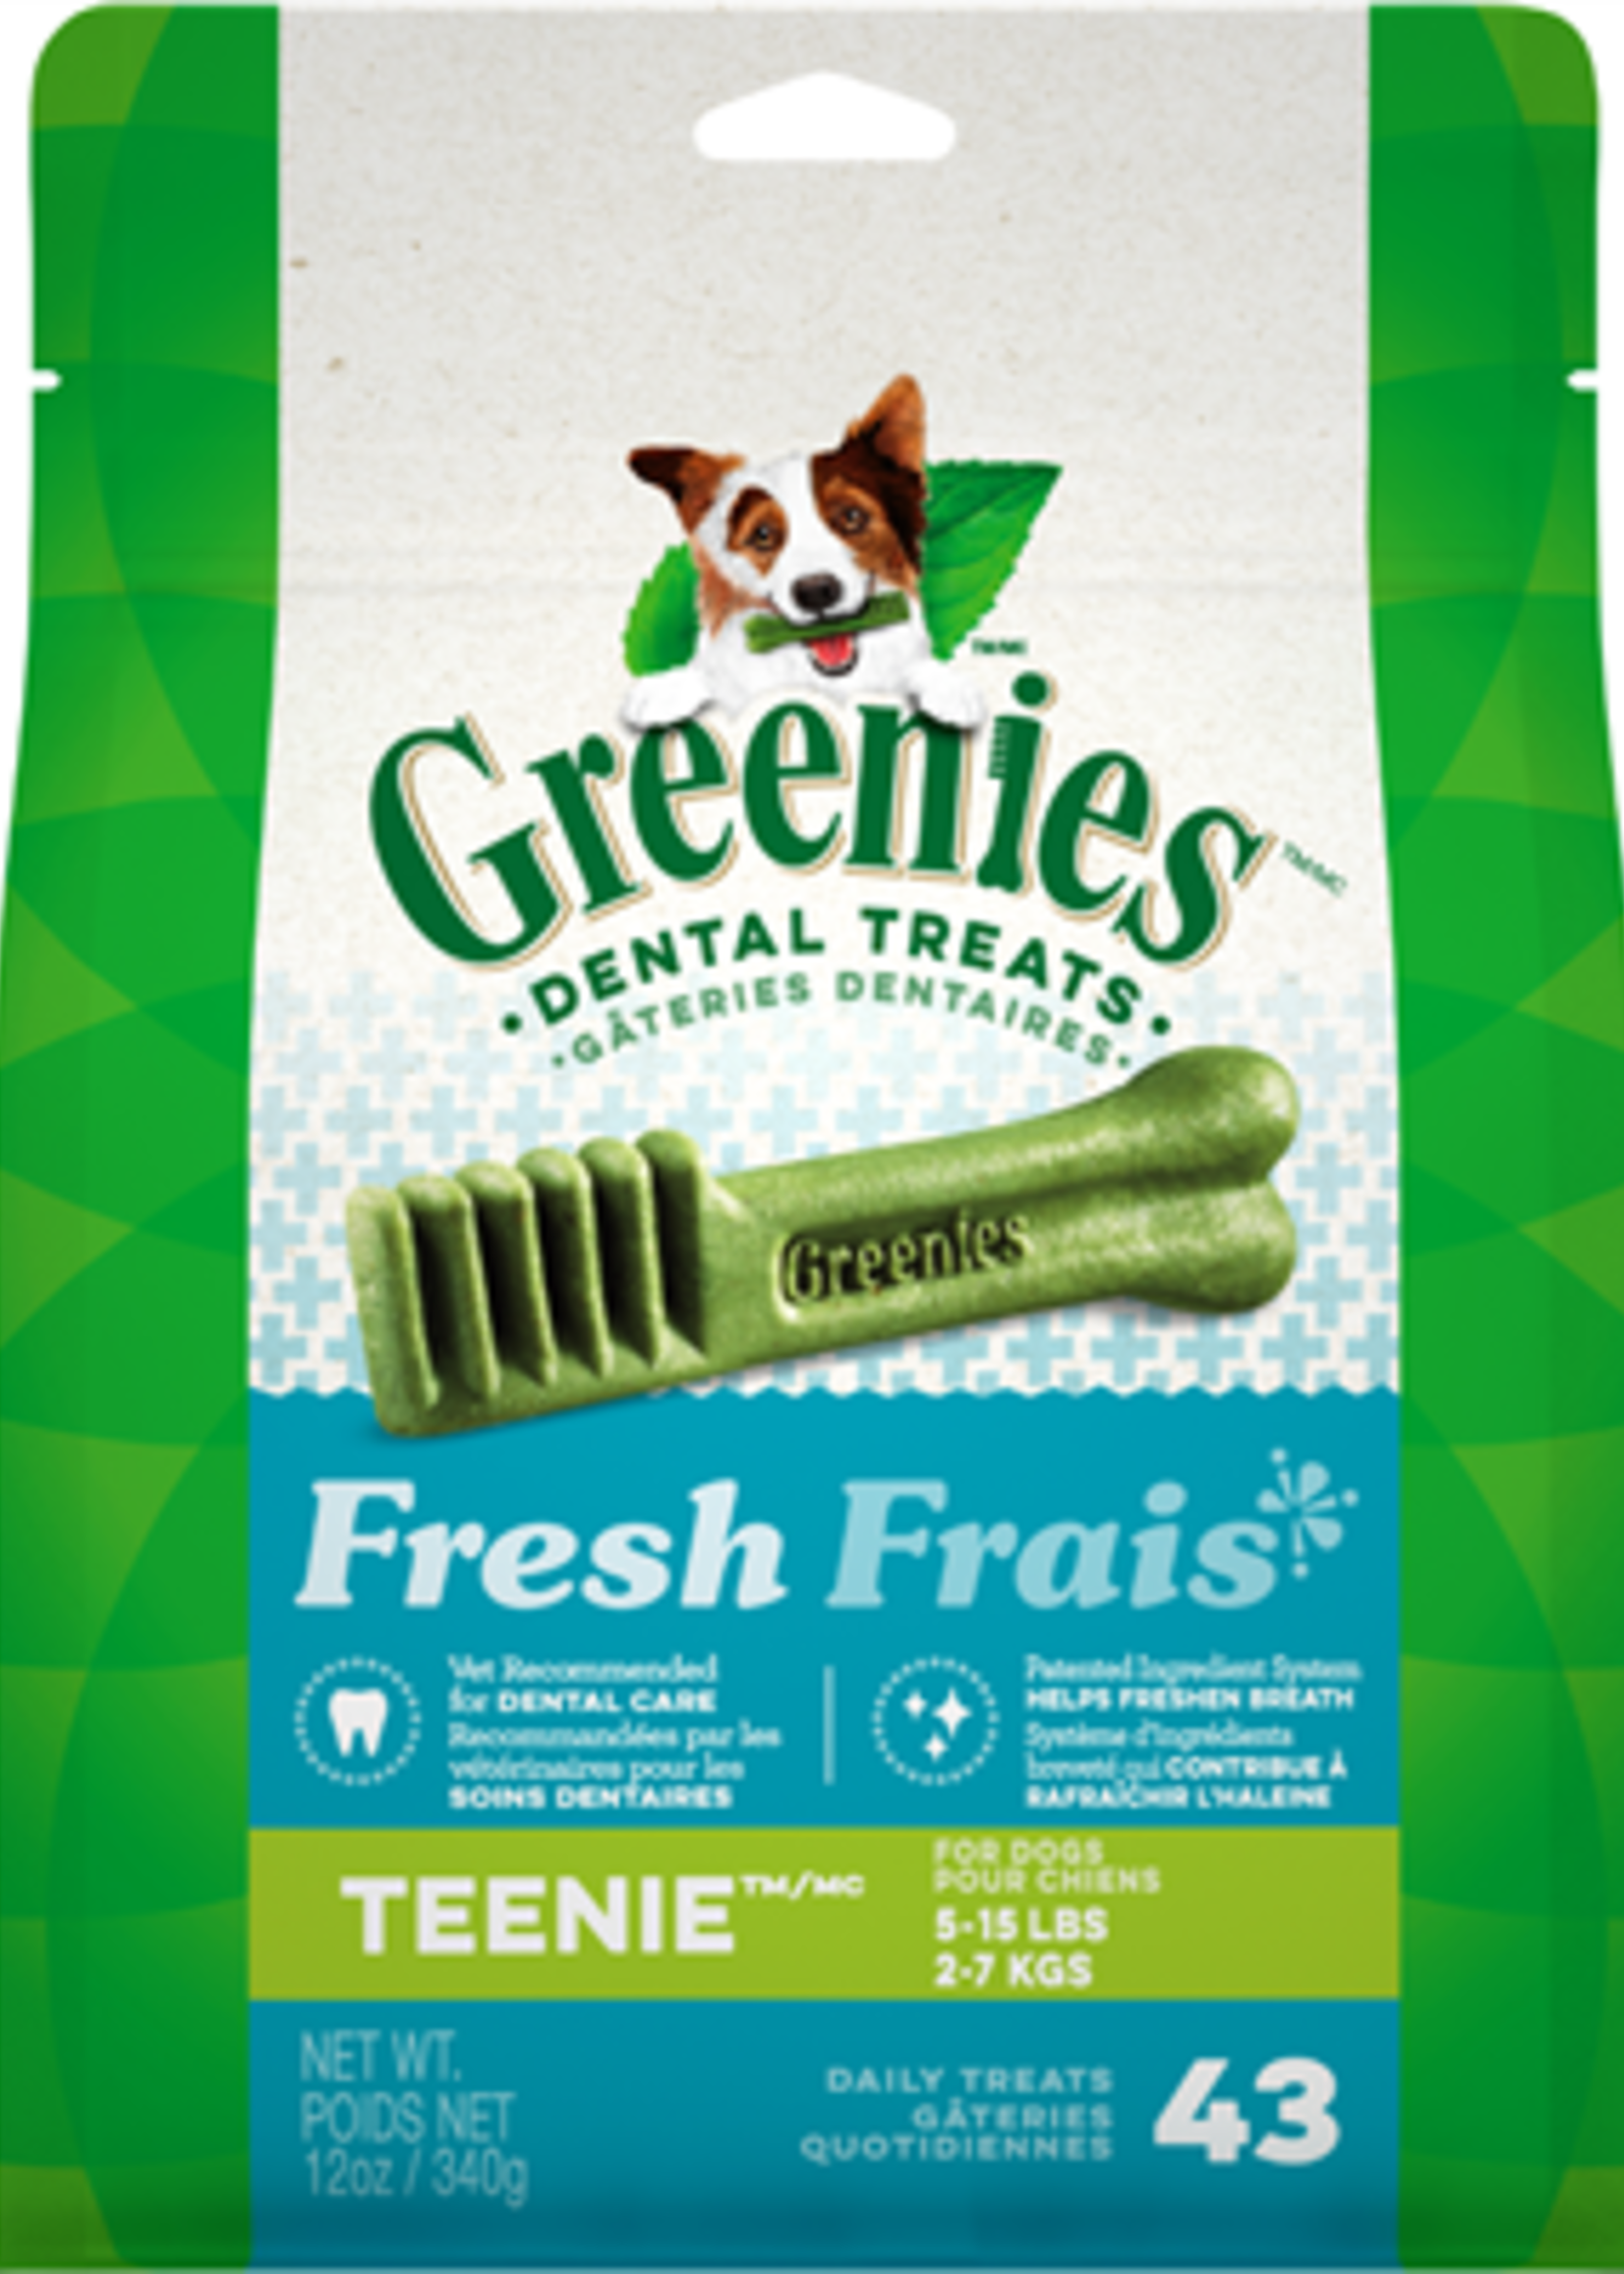 Greenies Greenies Mint Teenie 12OZ